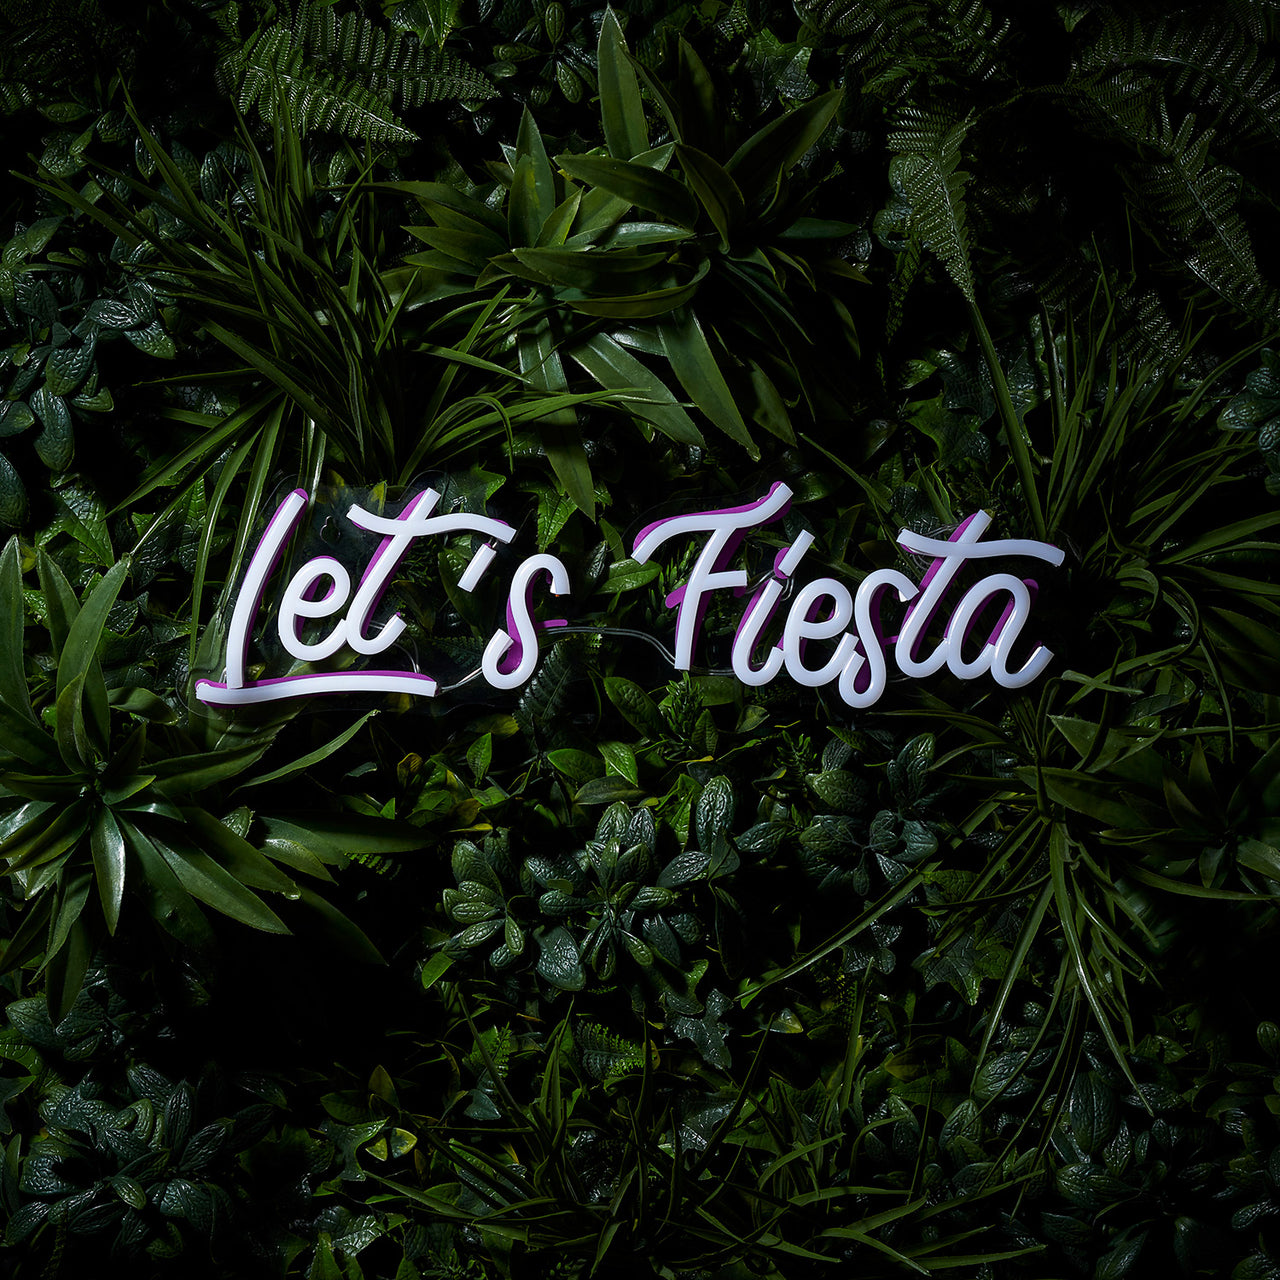 Let's Fiesta Neon Wall Light